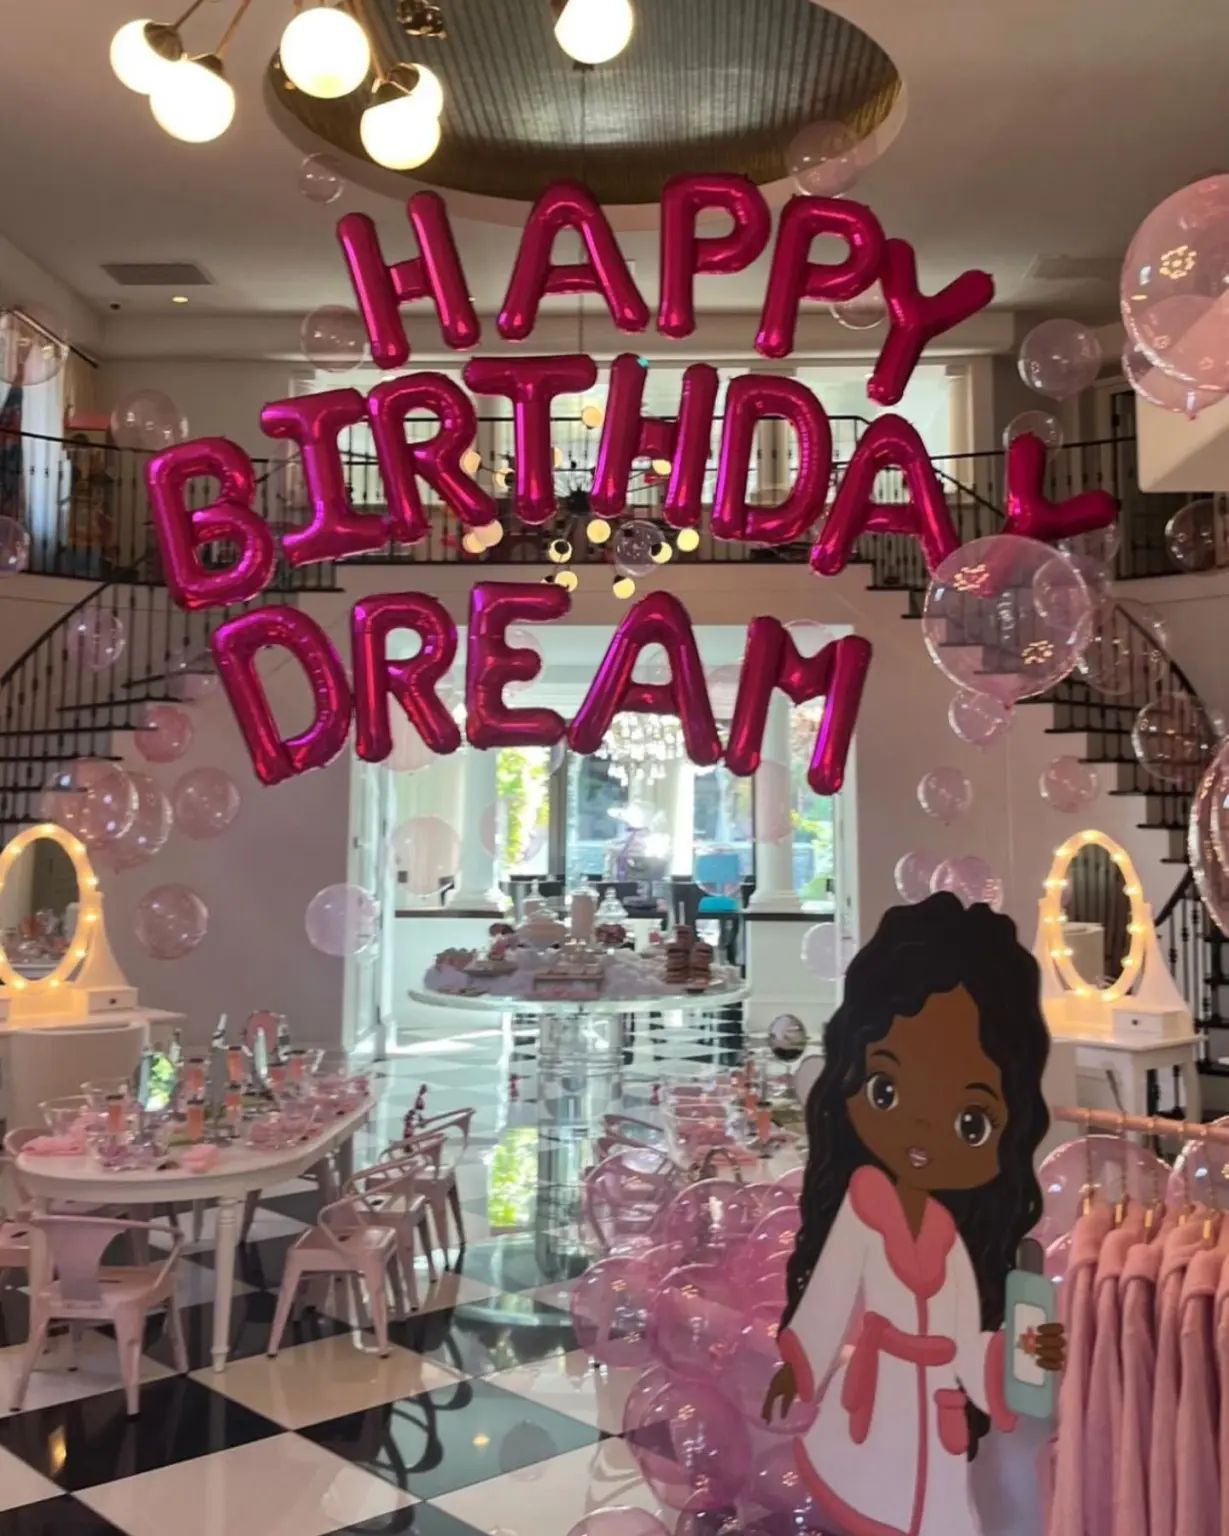 Rob Kardashian's daughter's birthday